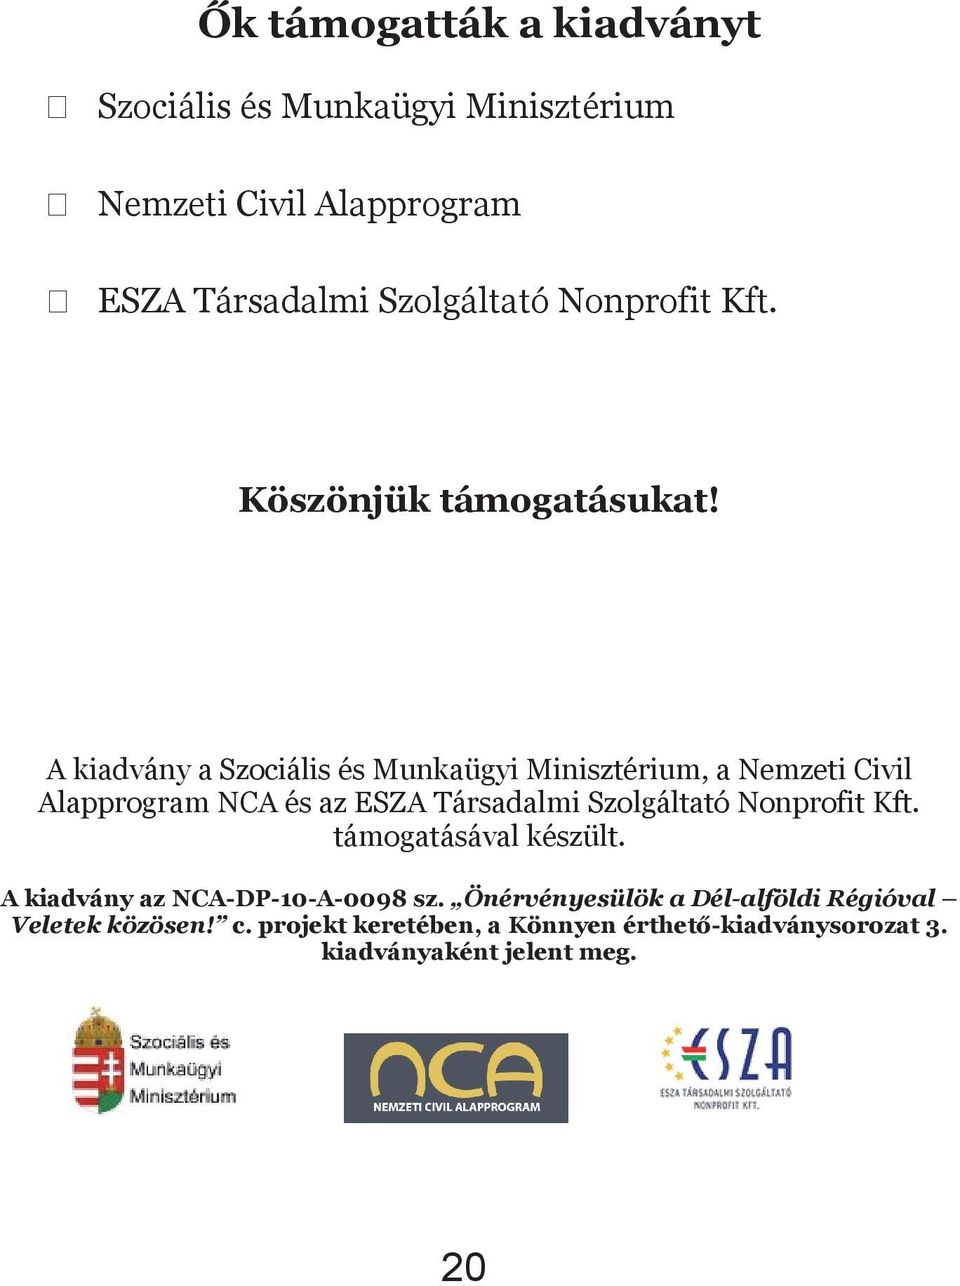 A kiadvány A kiadvány a Szociális a Szociális és Munkaügyi és Munkaügyi Minisztérium, Minisztérium, a Nemzeti a Nemzeti Civil Civil Alapprogram Alapprogram NCA és az NCA ESZA és az Társadalmi ESZA